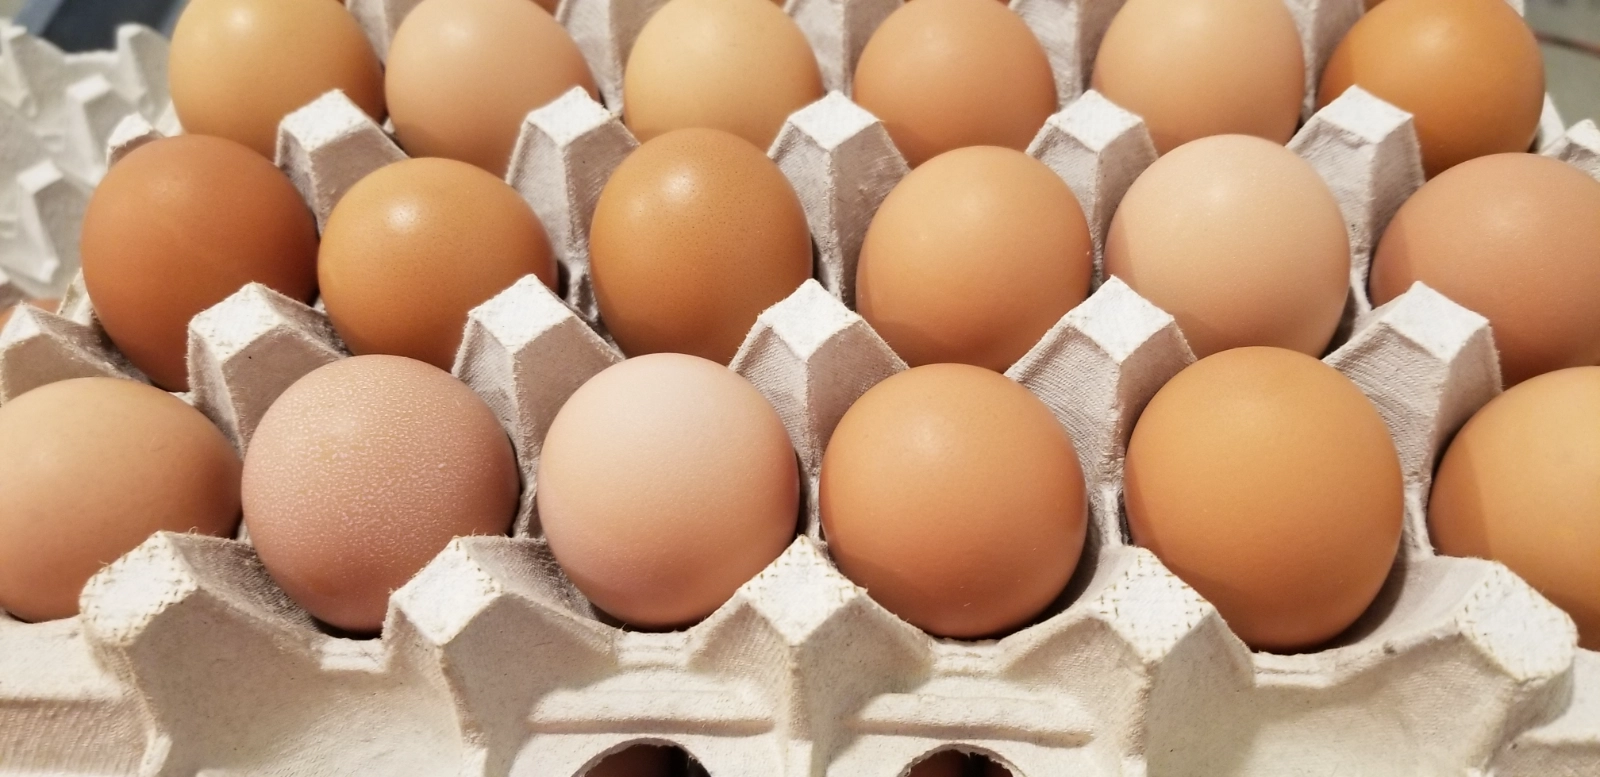 1-dozen-chicken-eggs-large